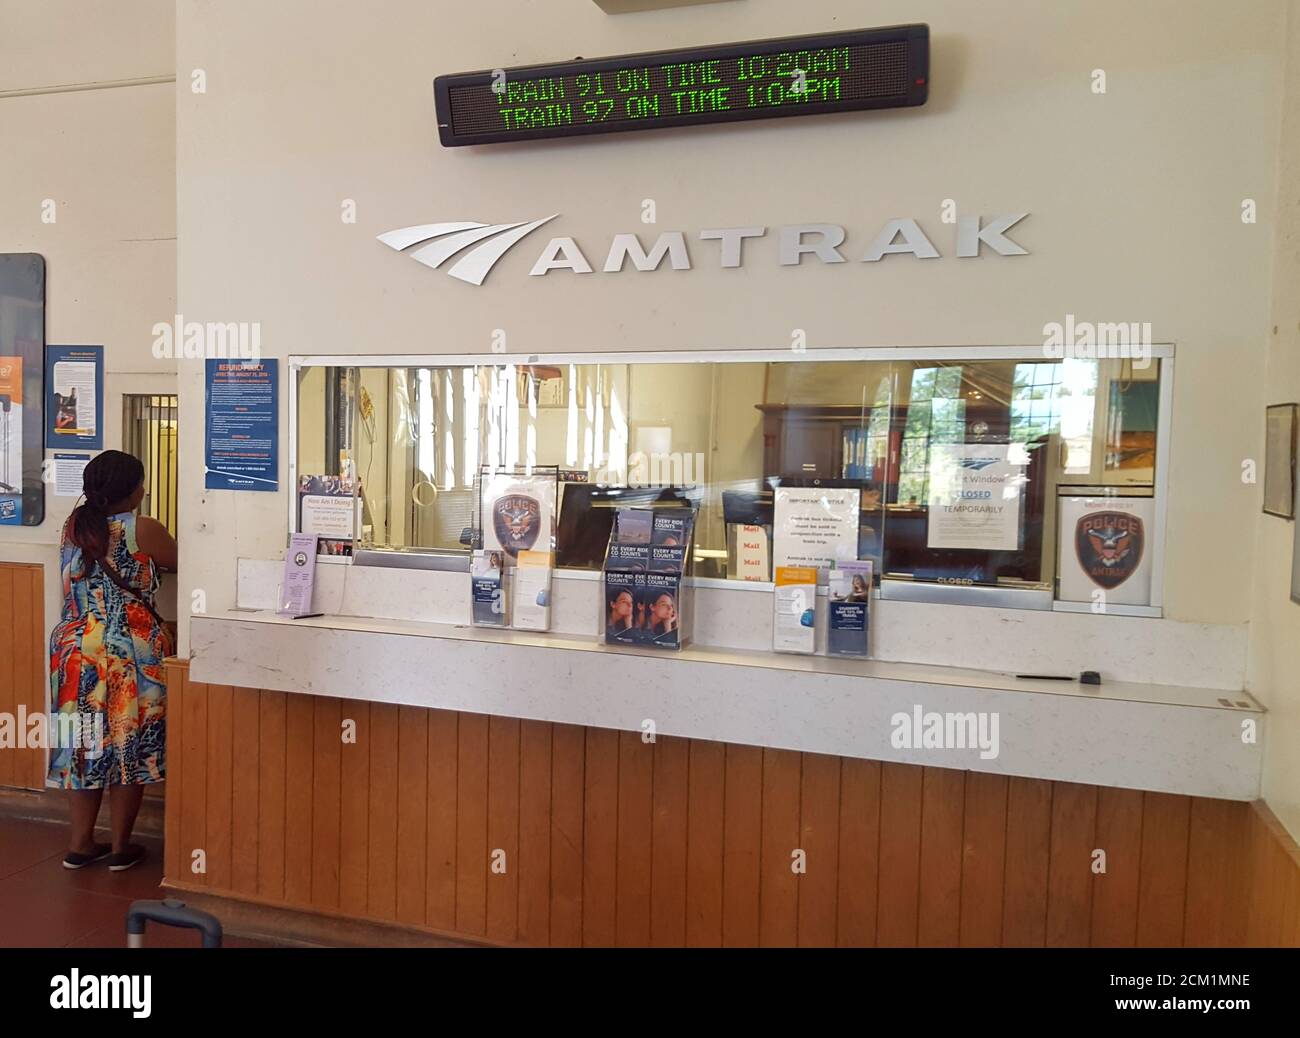 La biglietteria del treno presso la stazione ferroviaria Orlando Health/Amtrak, Orlando, Florida, Stati Uniti Foto Stock